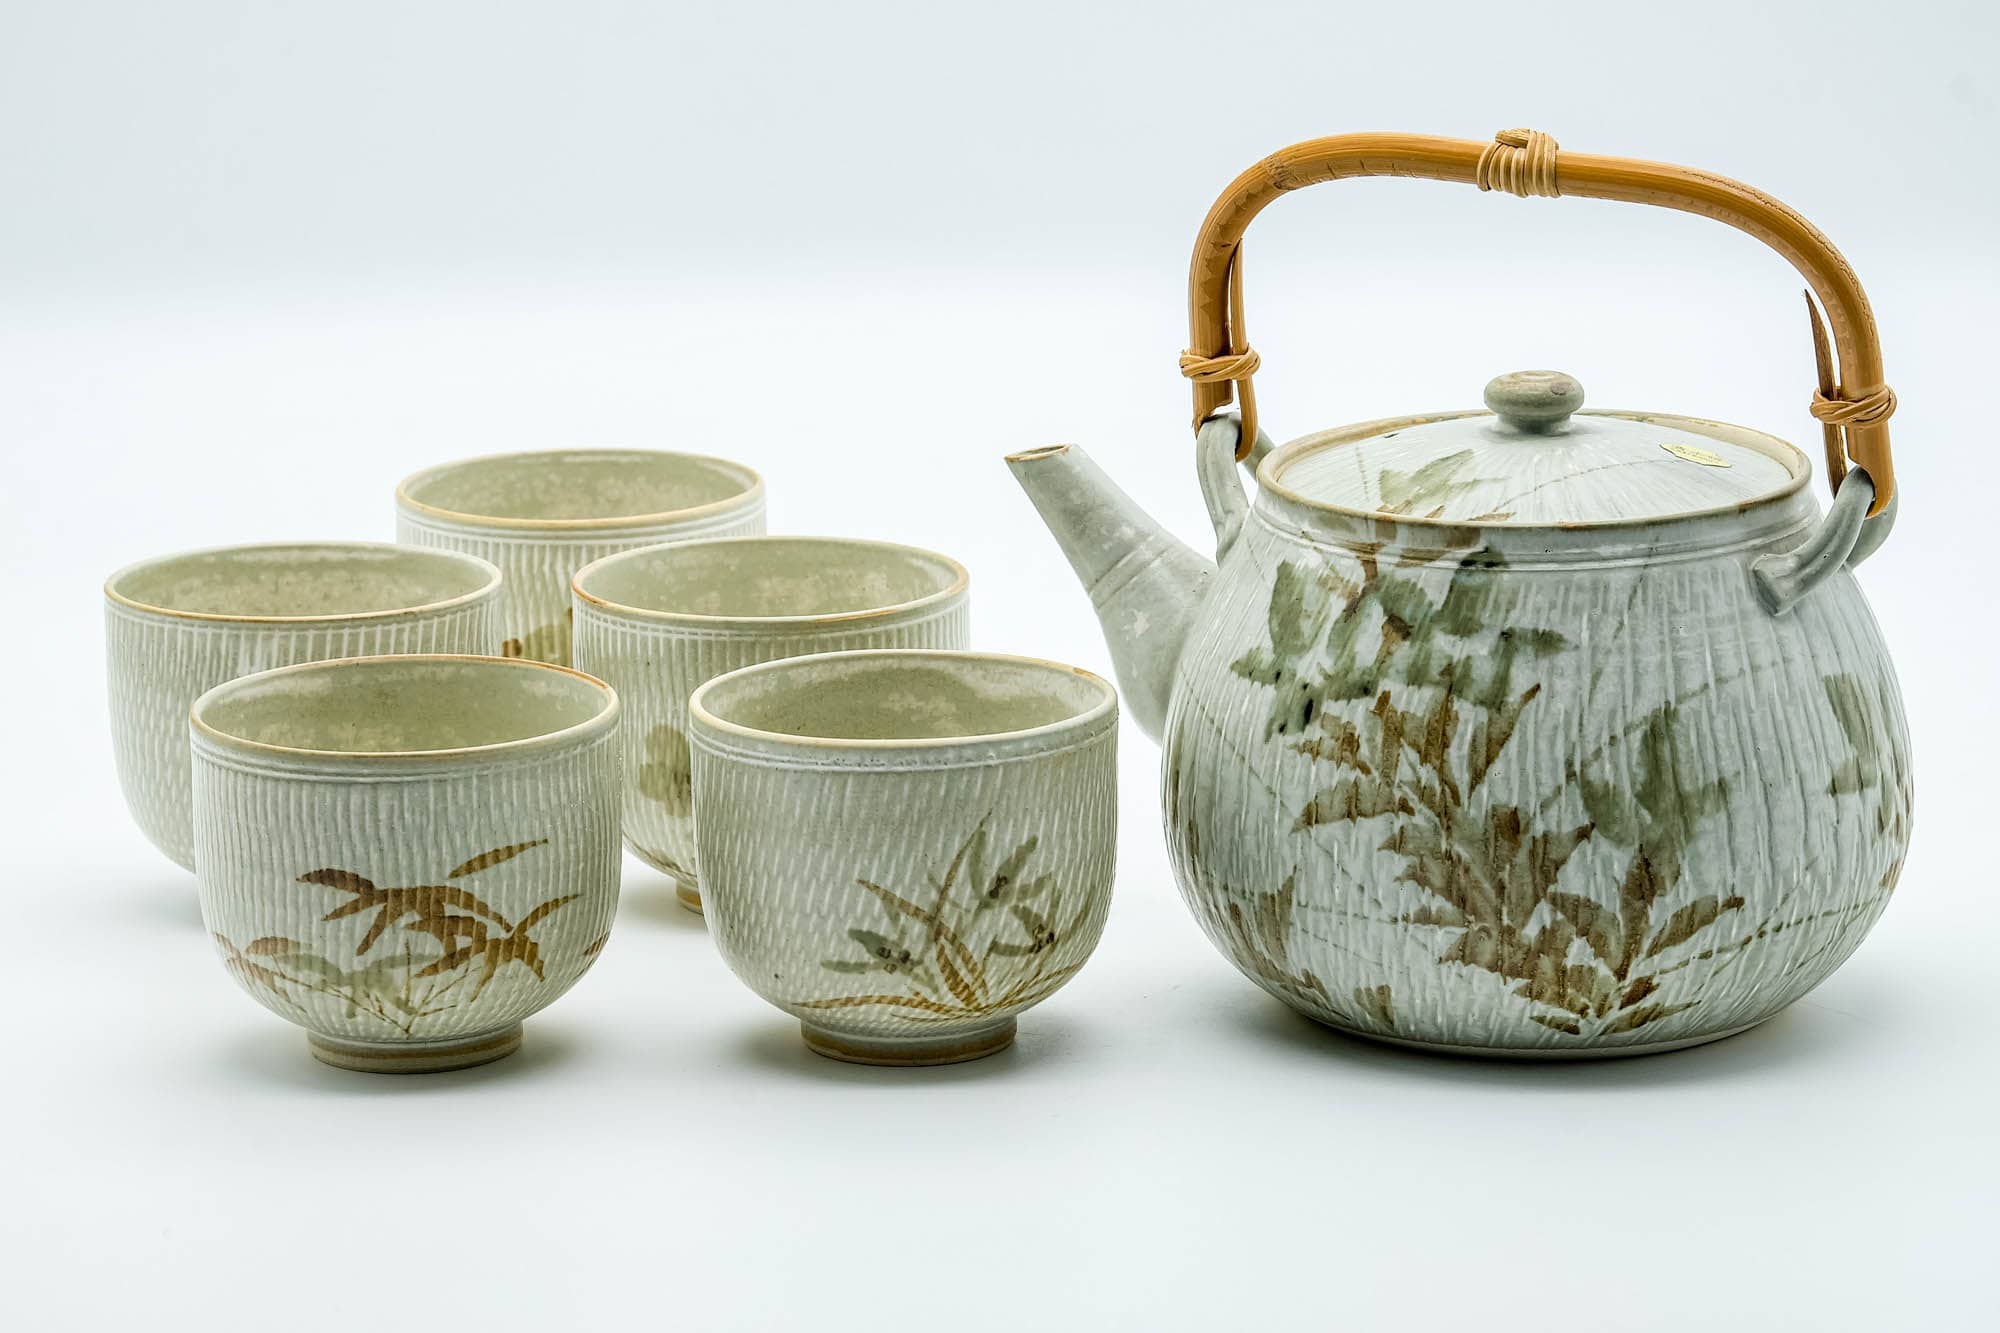 Japanese Tea Set - Beige Speckled Floral Kiyomizu-yaki Dobin Teapot with 5 Yunomi Teacups